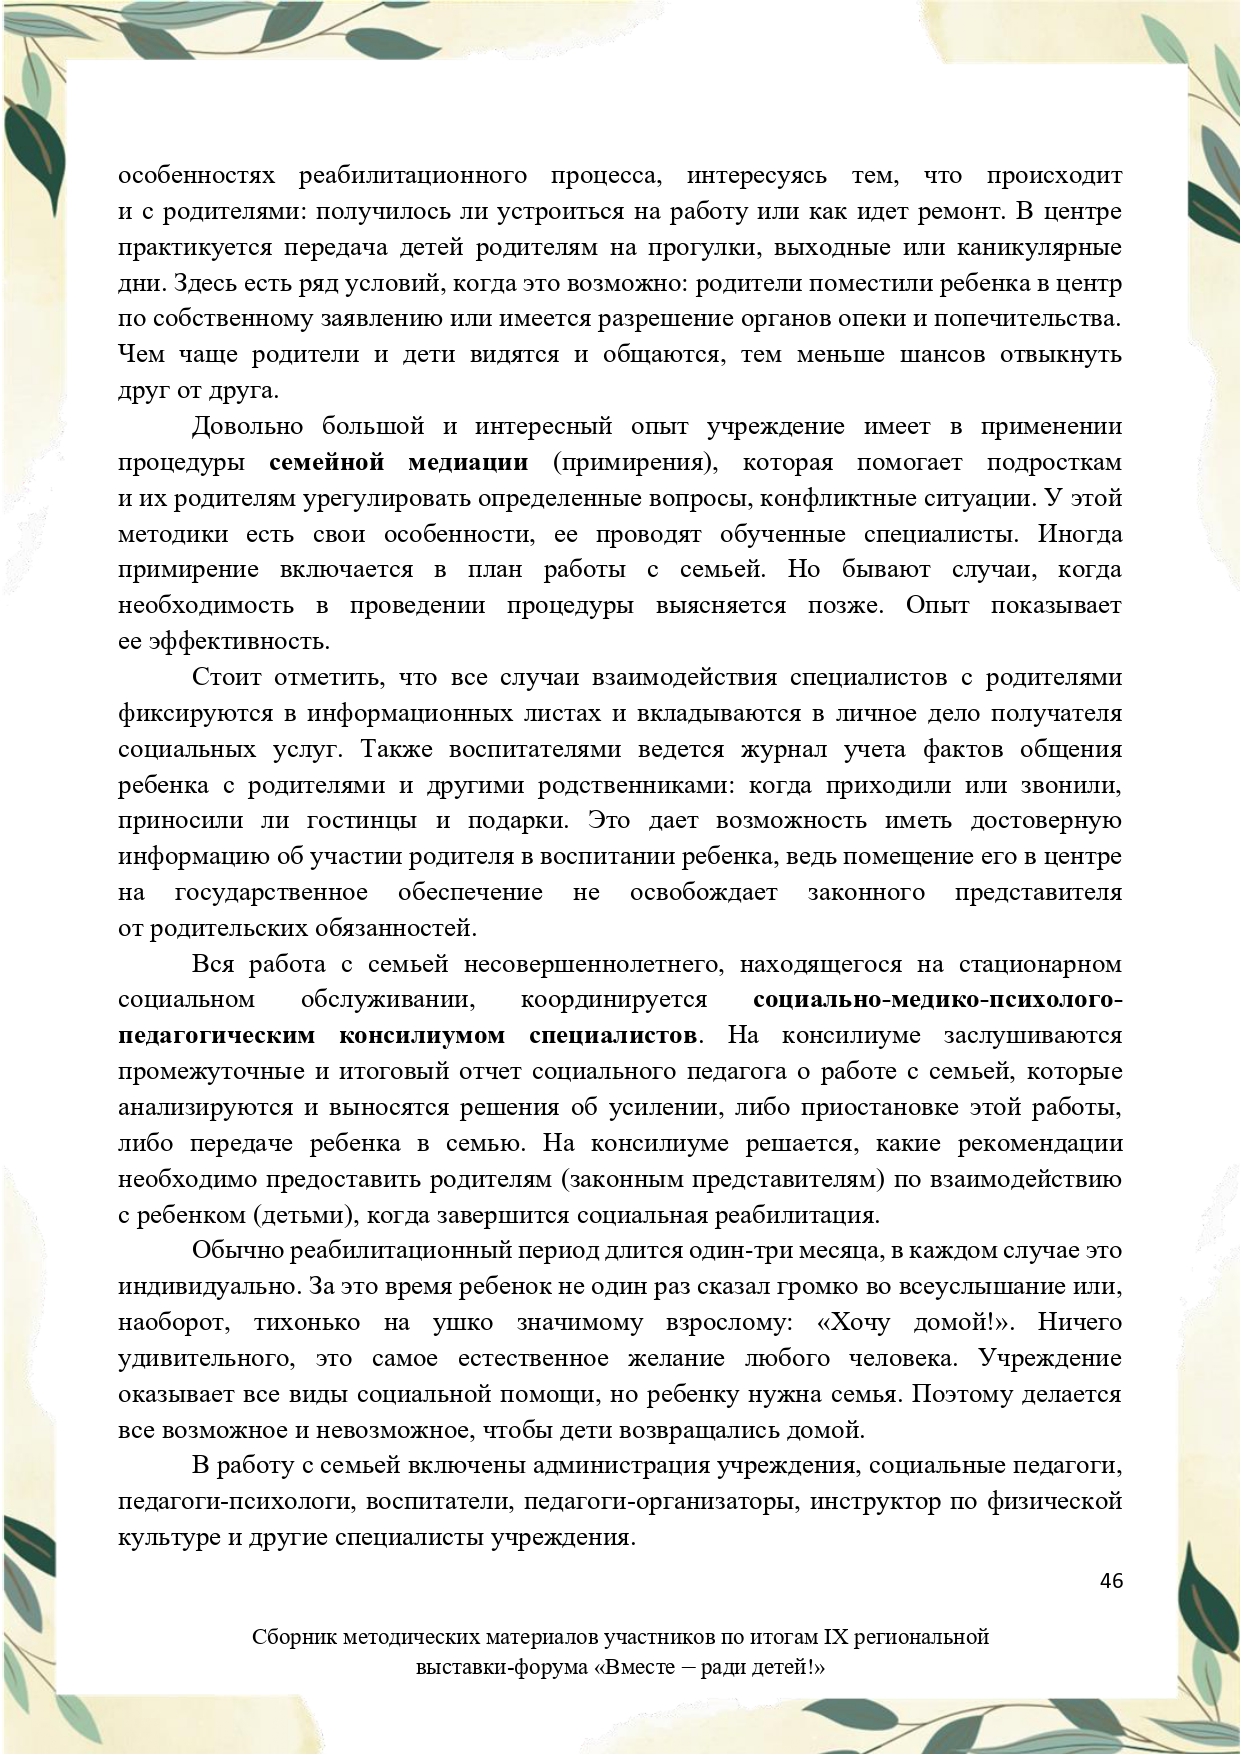 Sbornik_metodicheskikh_materialov_uchastnikov_IX_regionalnoy_vystavki-foruma_Vmeste__radi_detey_33__2023_page-0046